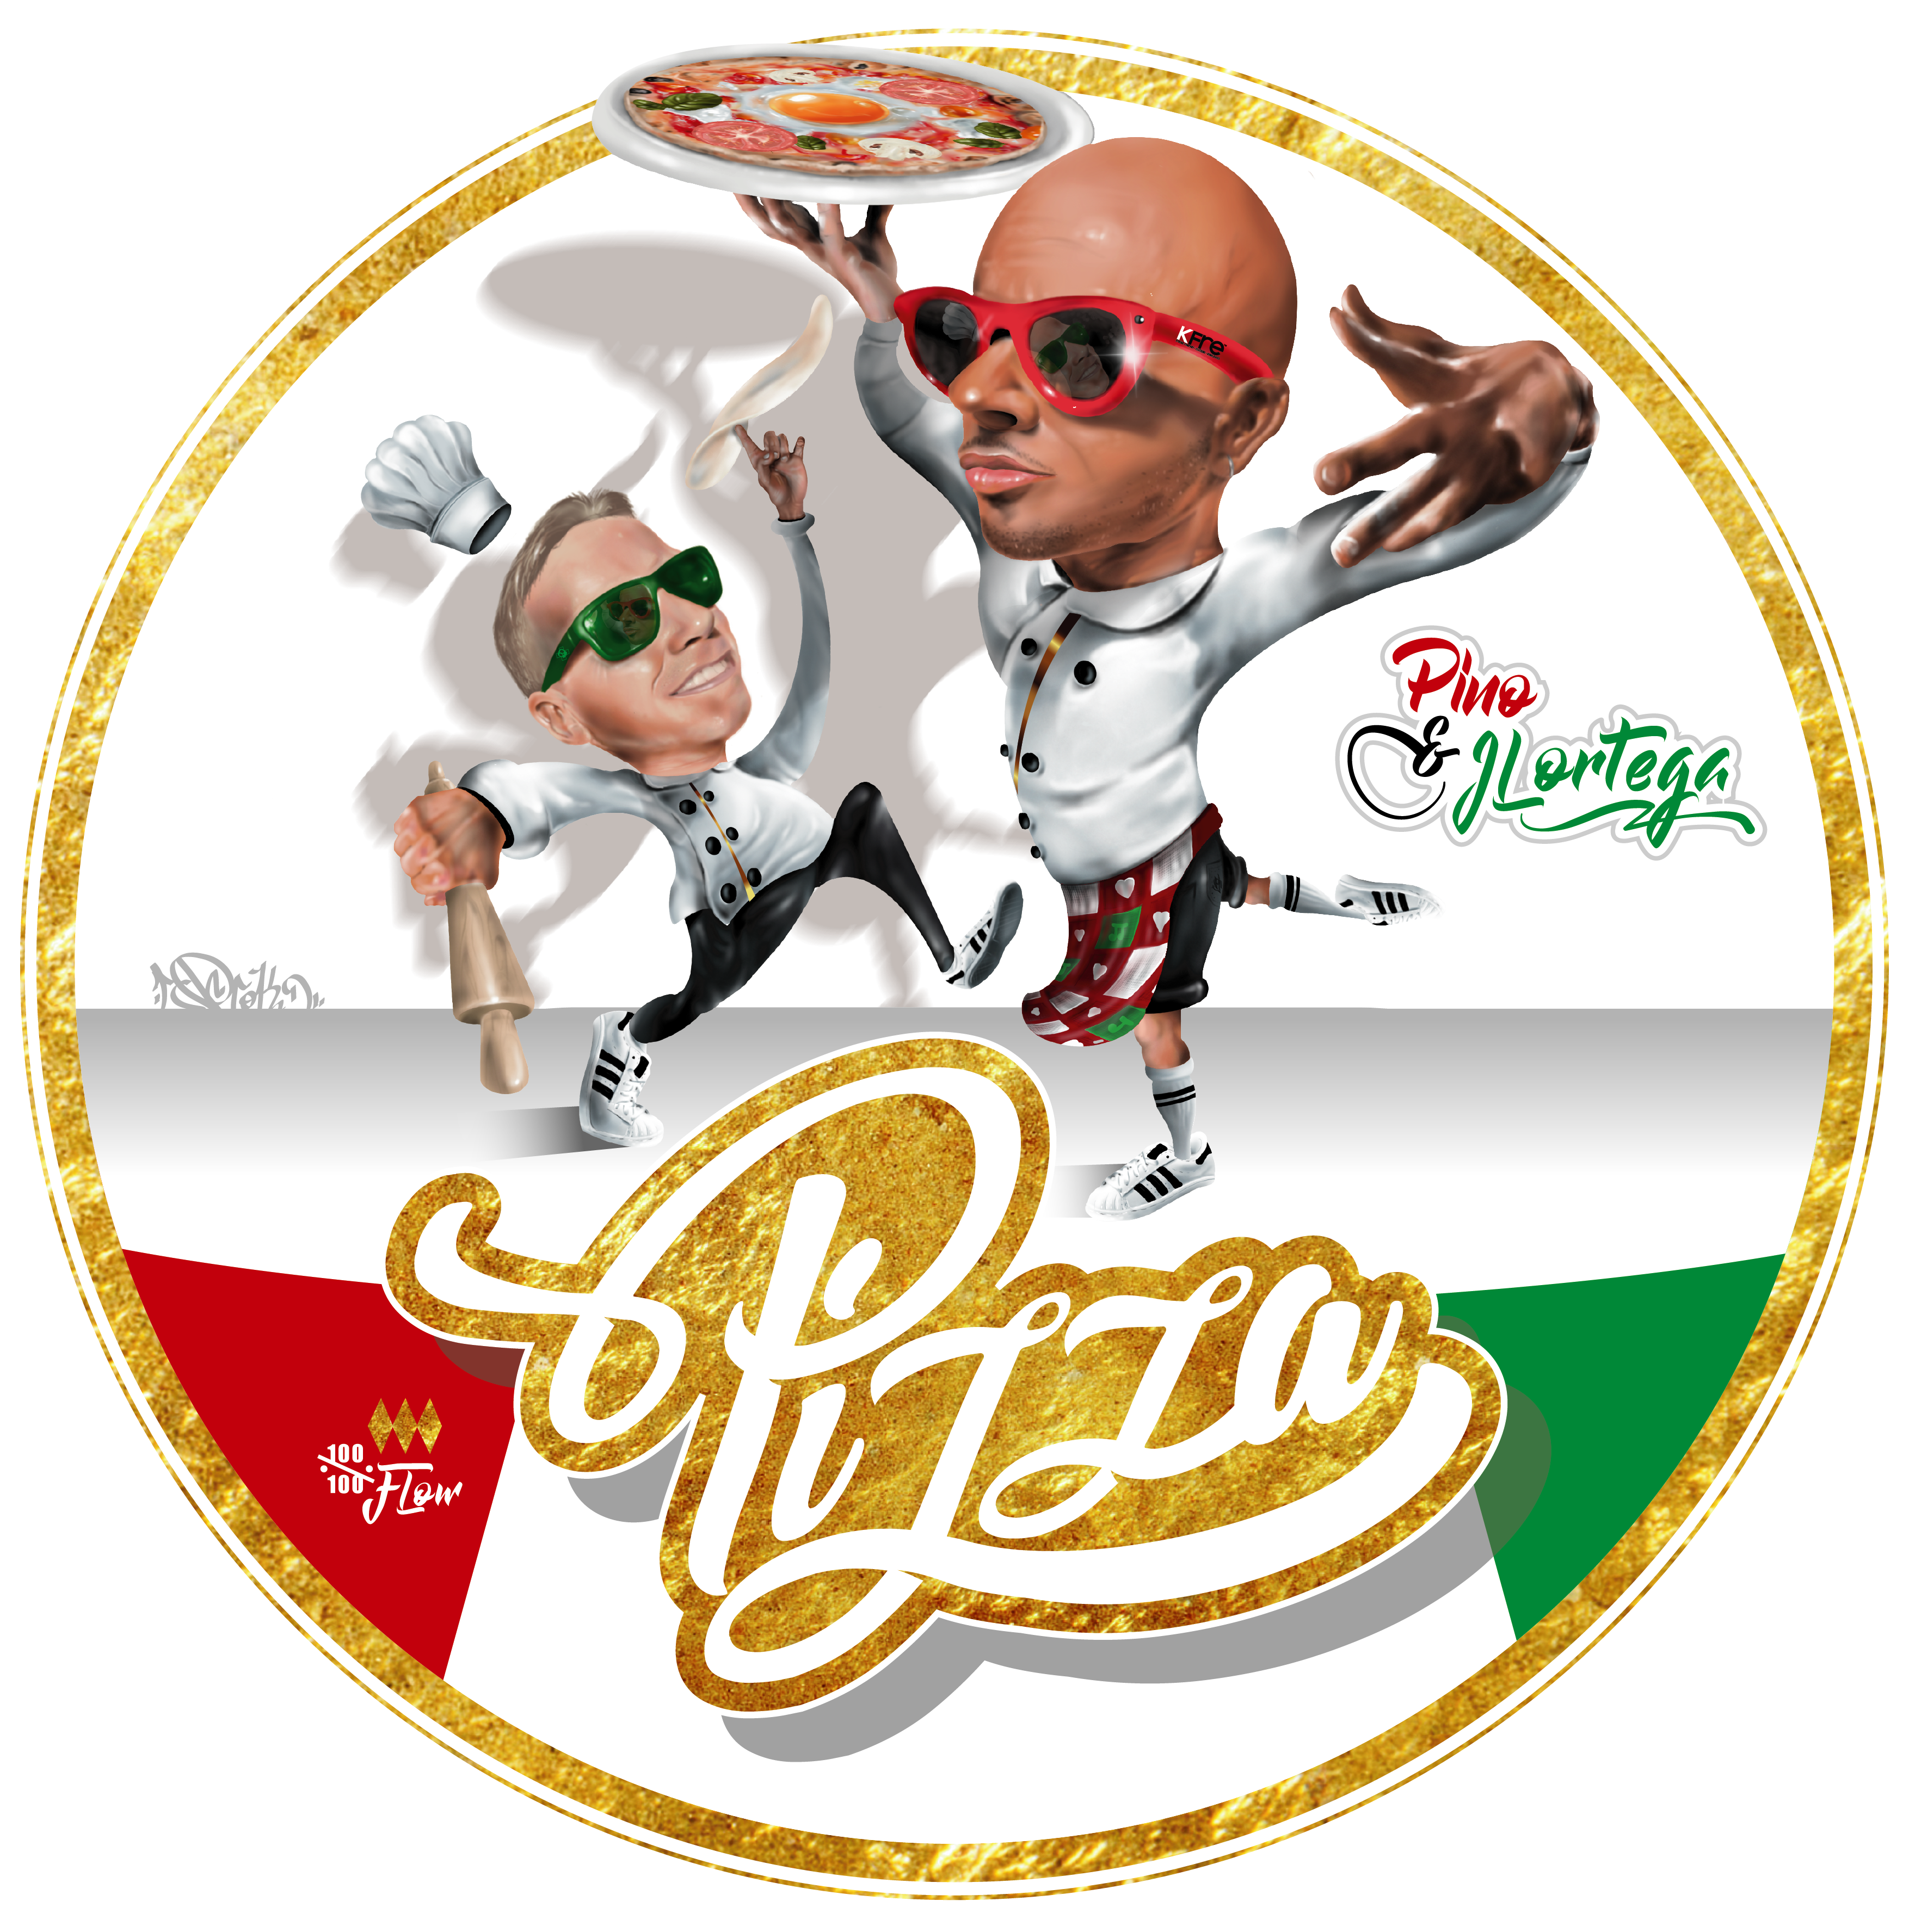 Pizza_pino_jl_ortega